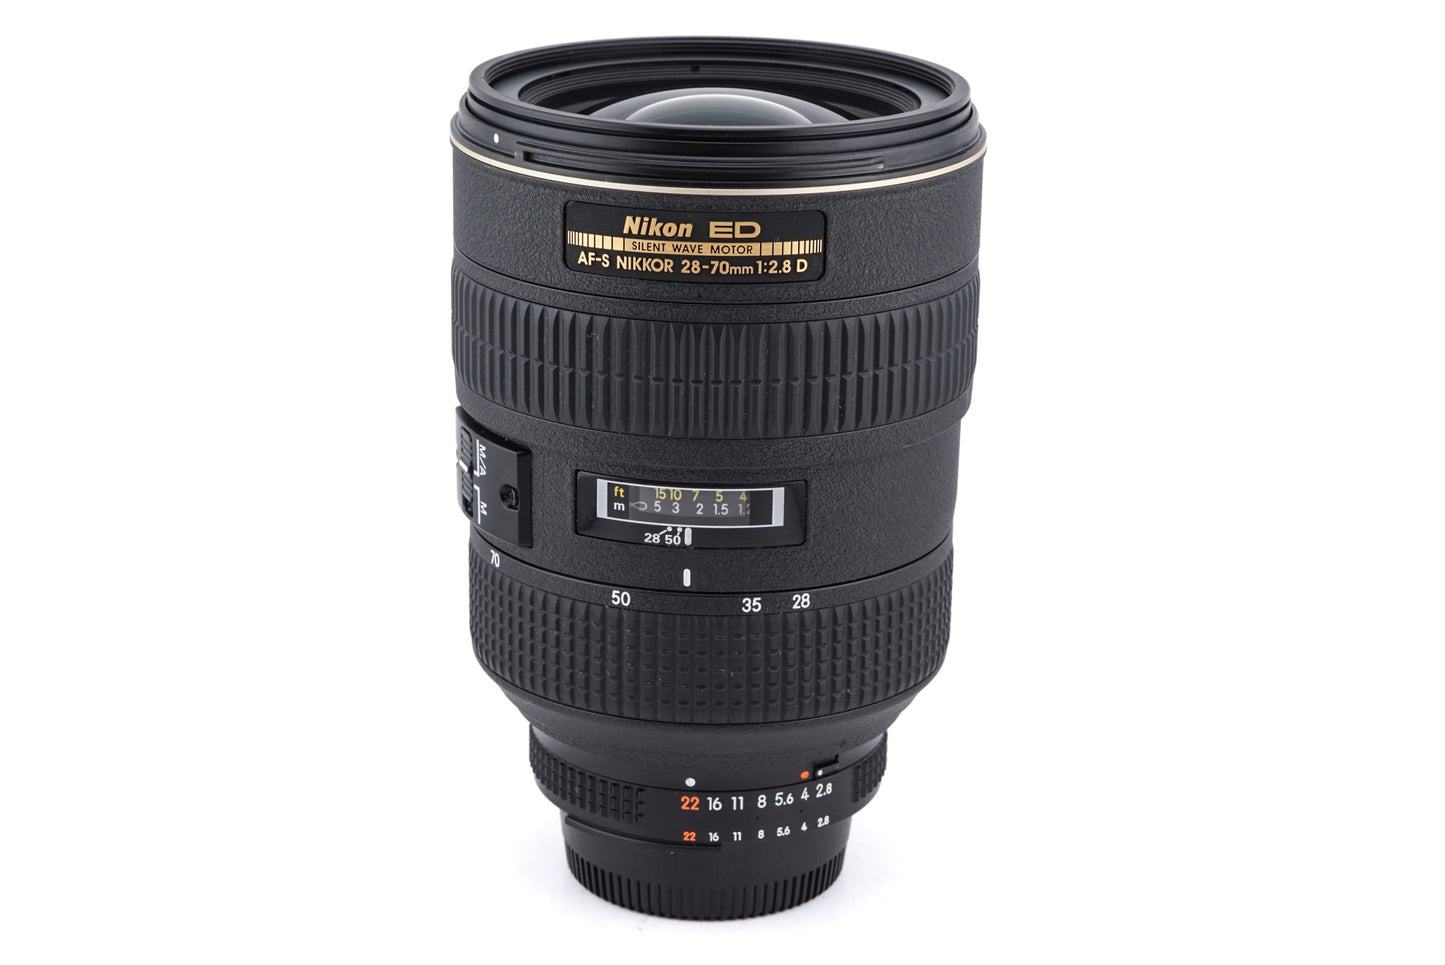 Nikon 28-70mm f2.8 D ED AF-S Nikkor - Lens